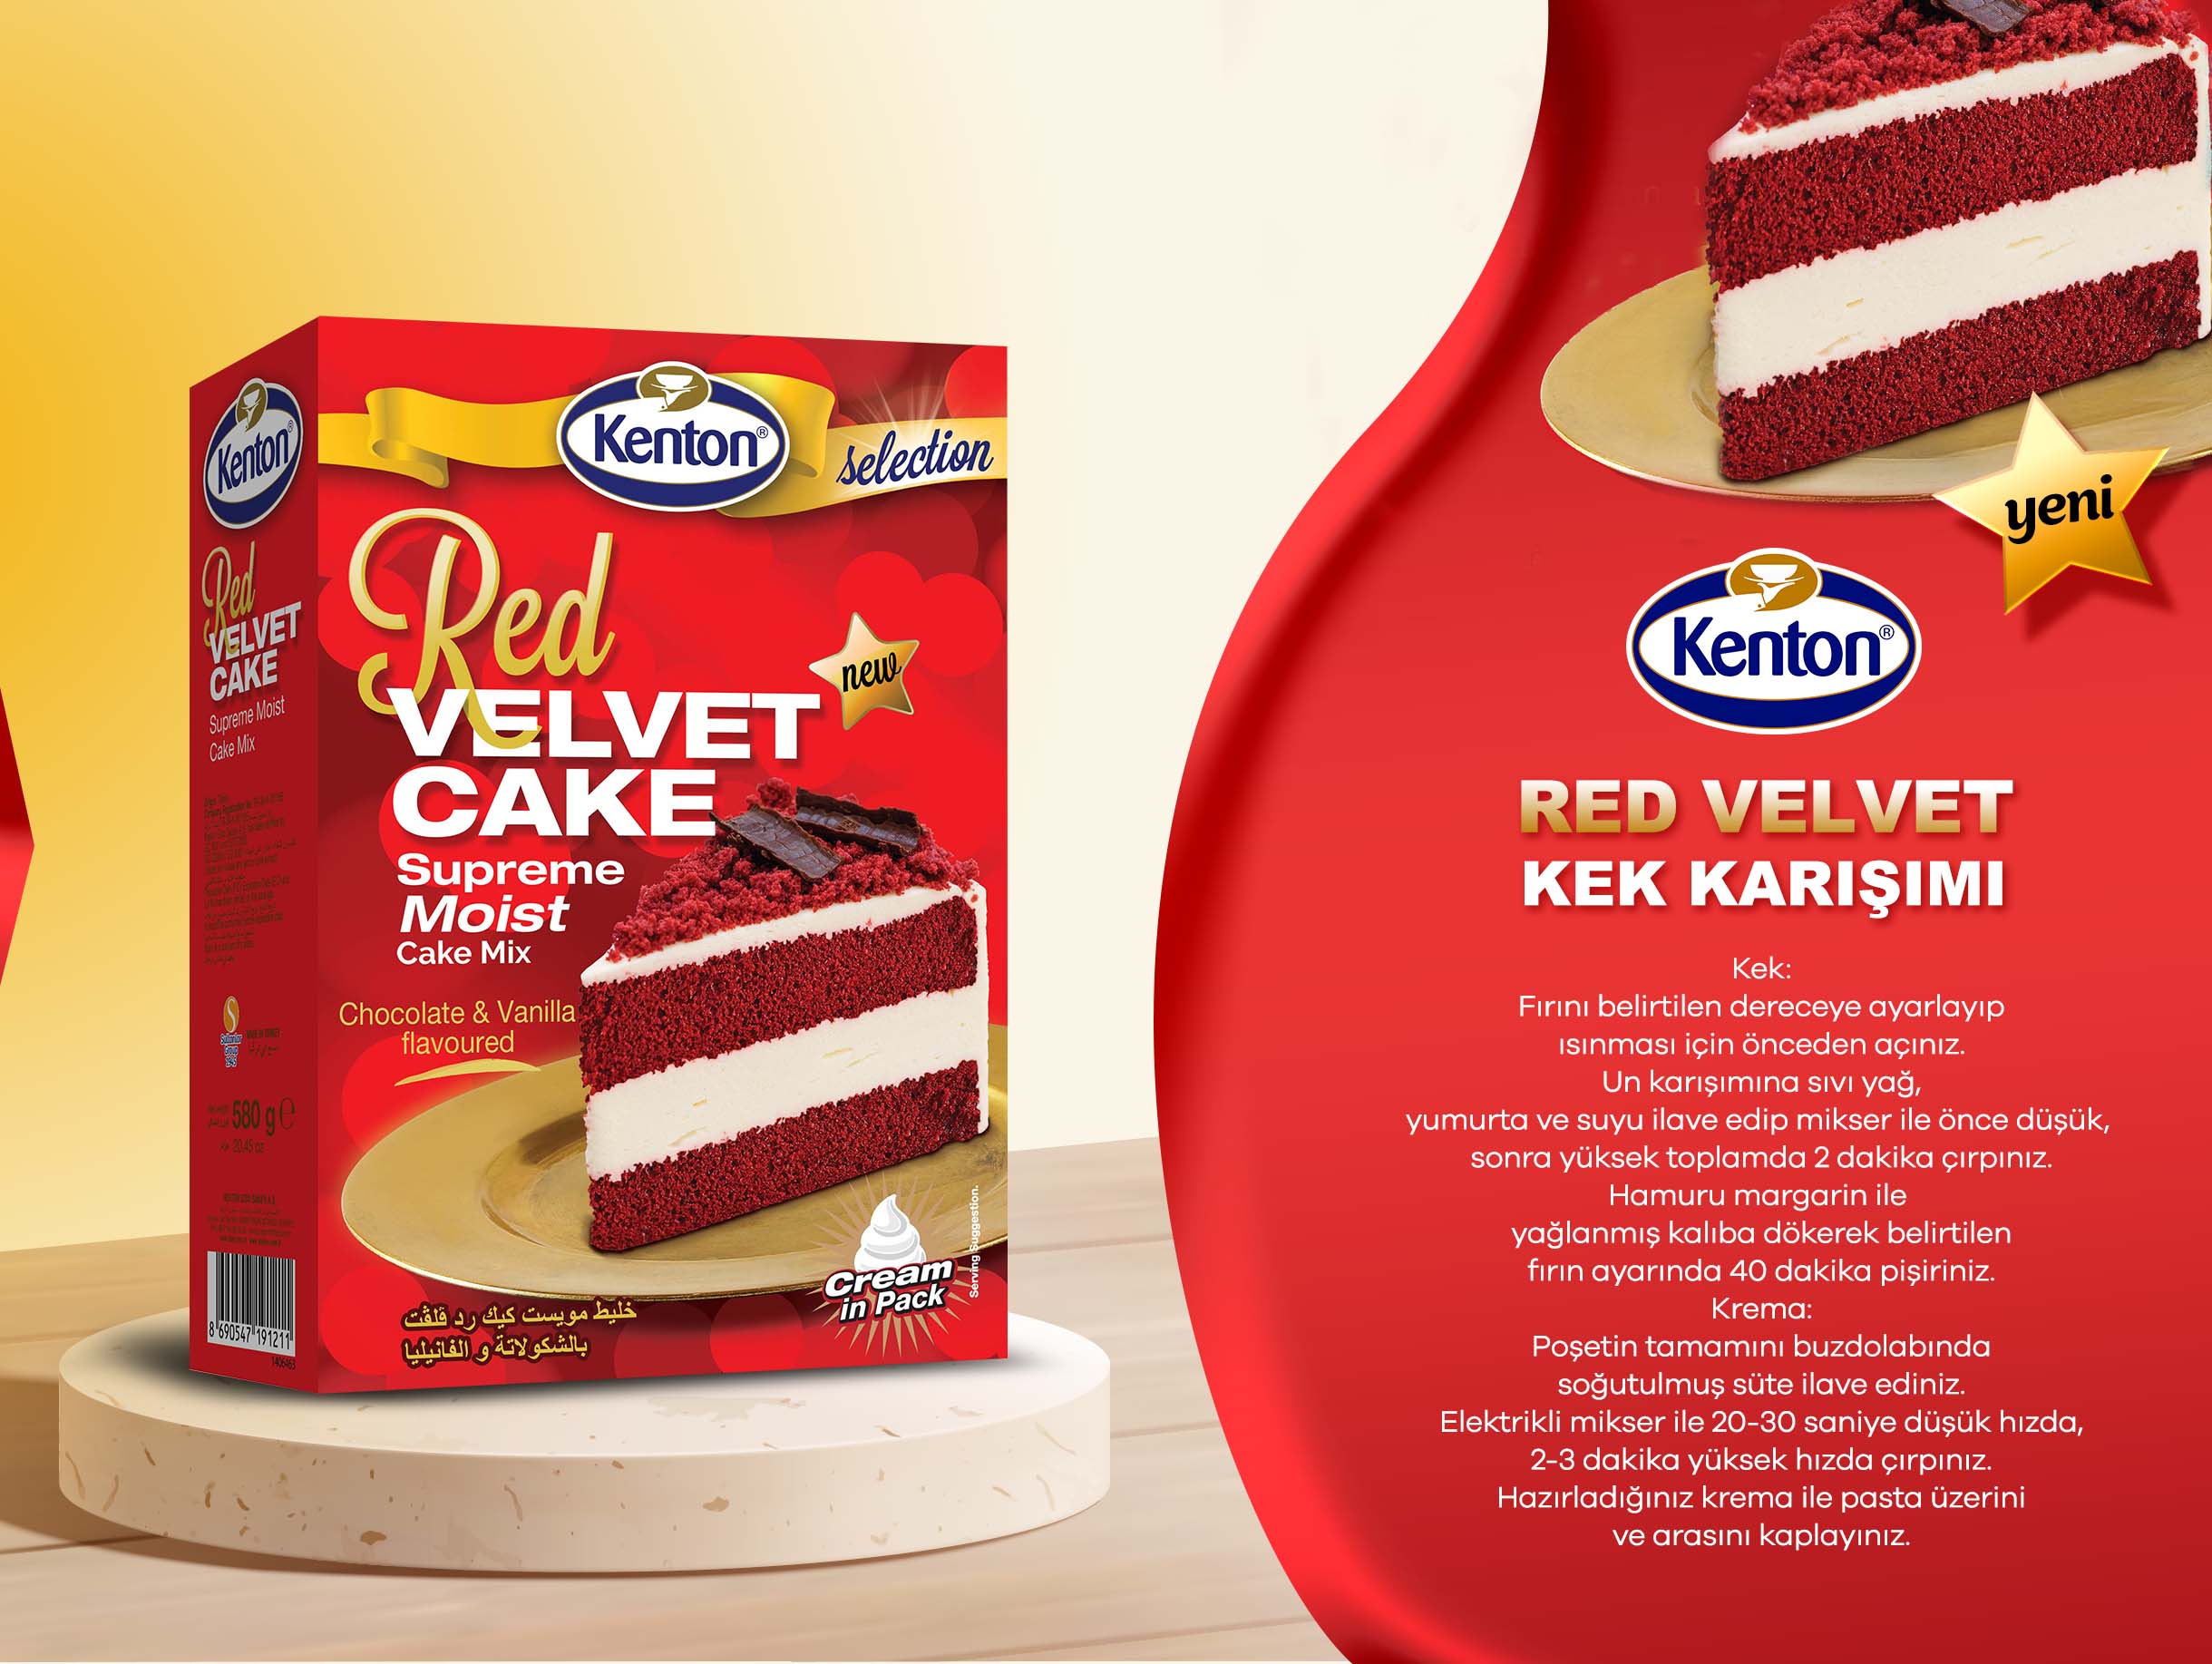 Red Velvet Kek Karısımı 580 g.jpg (329 KB)